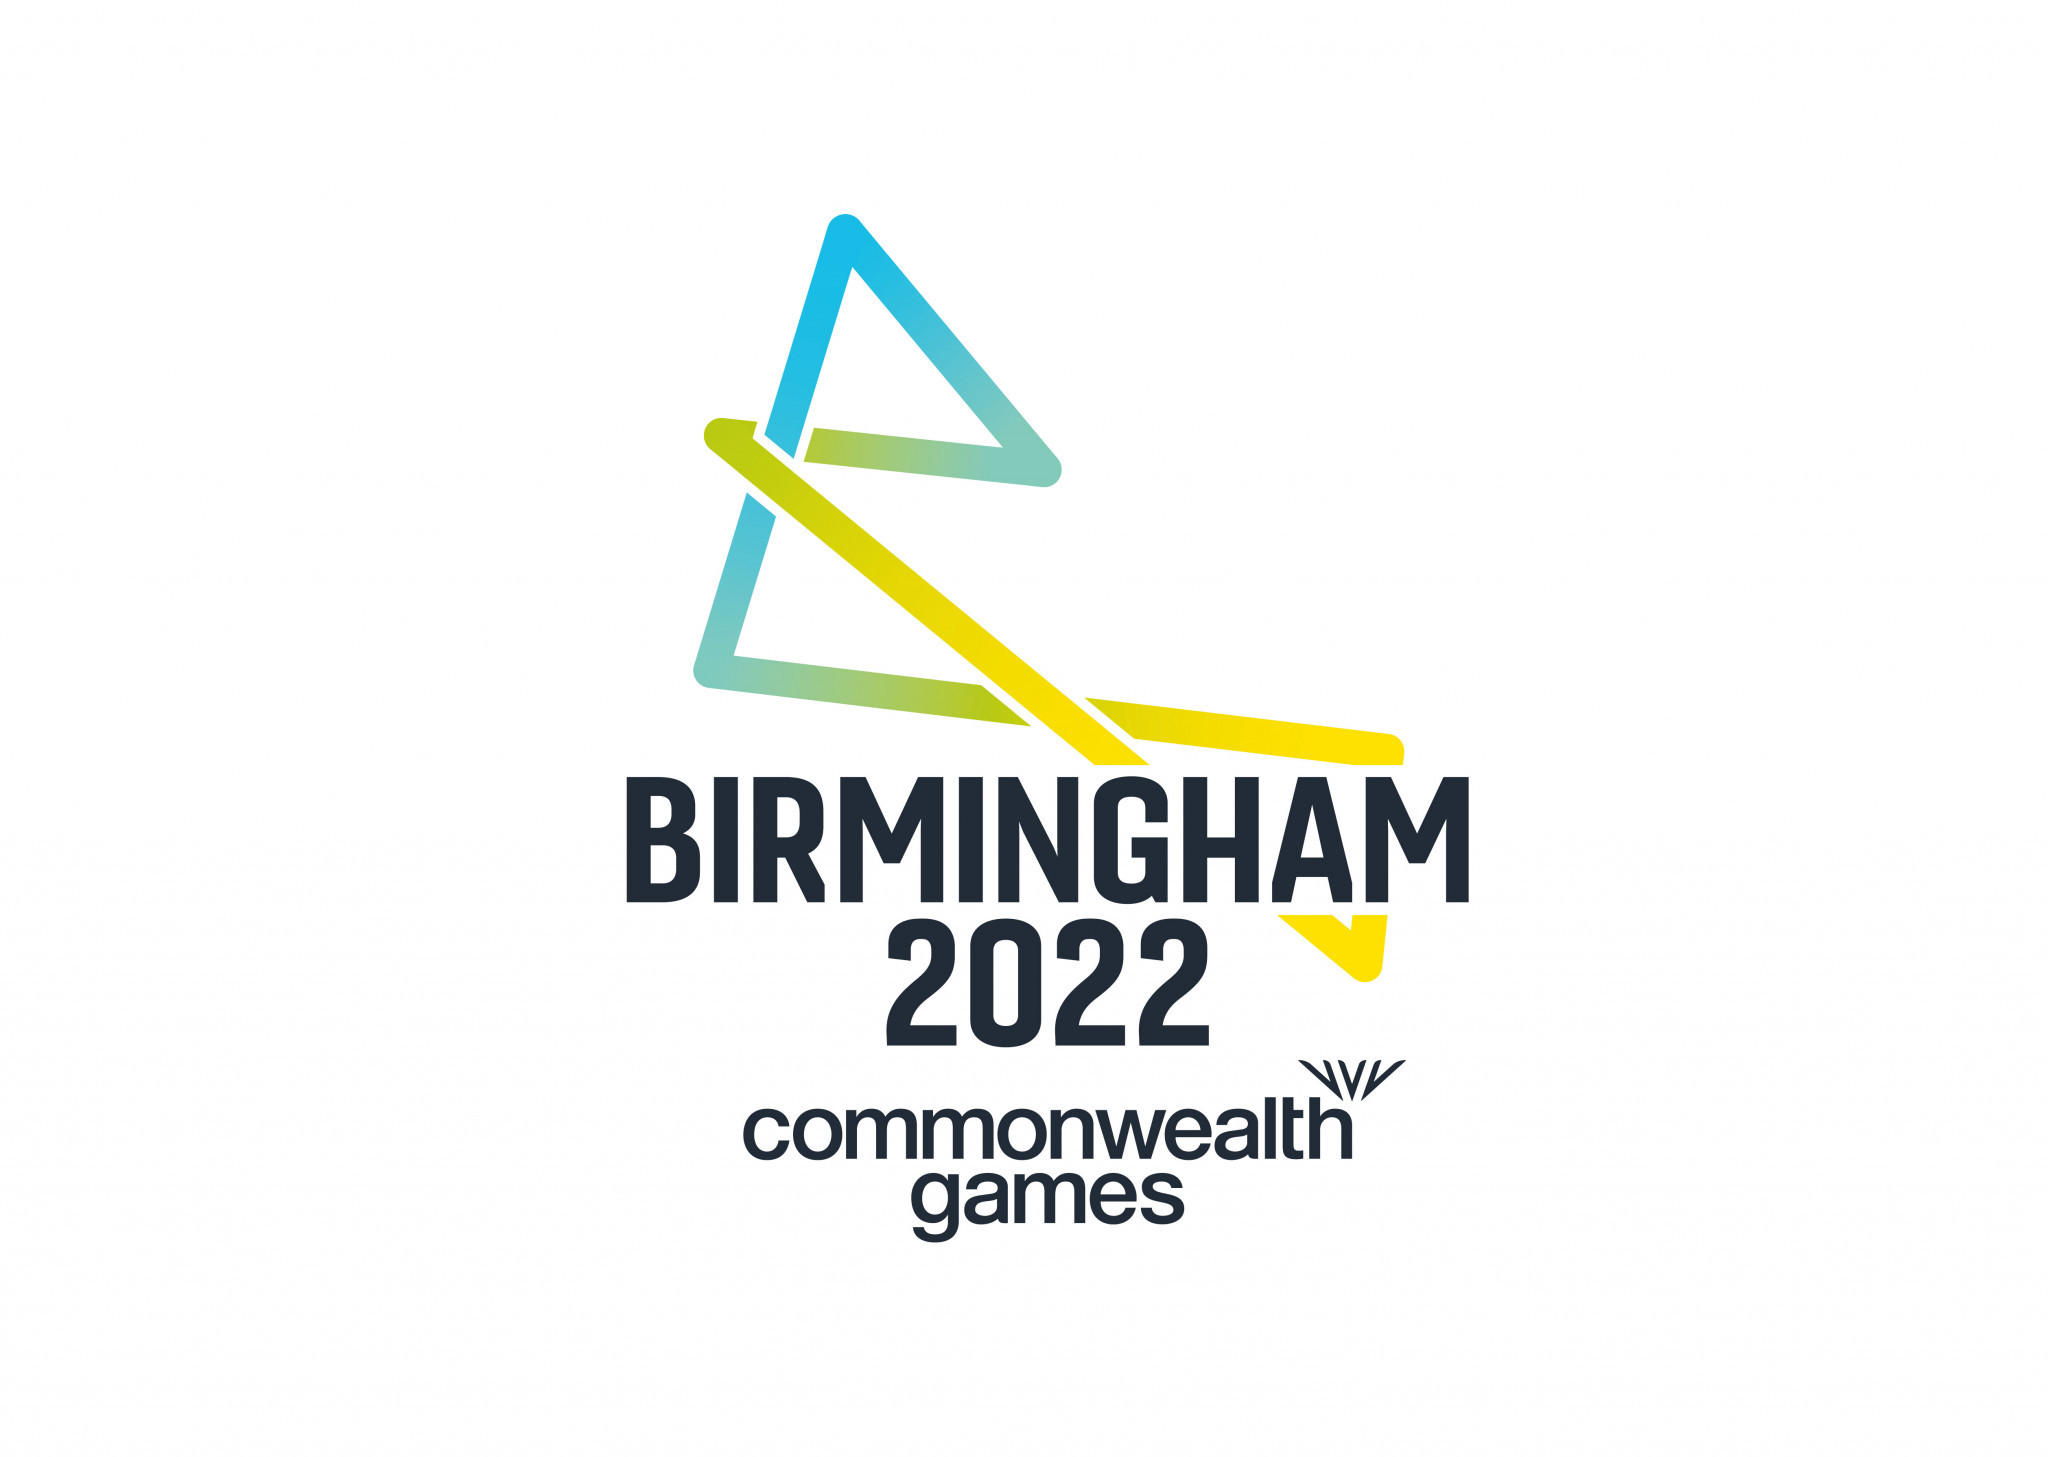 Birmingham 2022 launches apprenticeship scheme